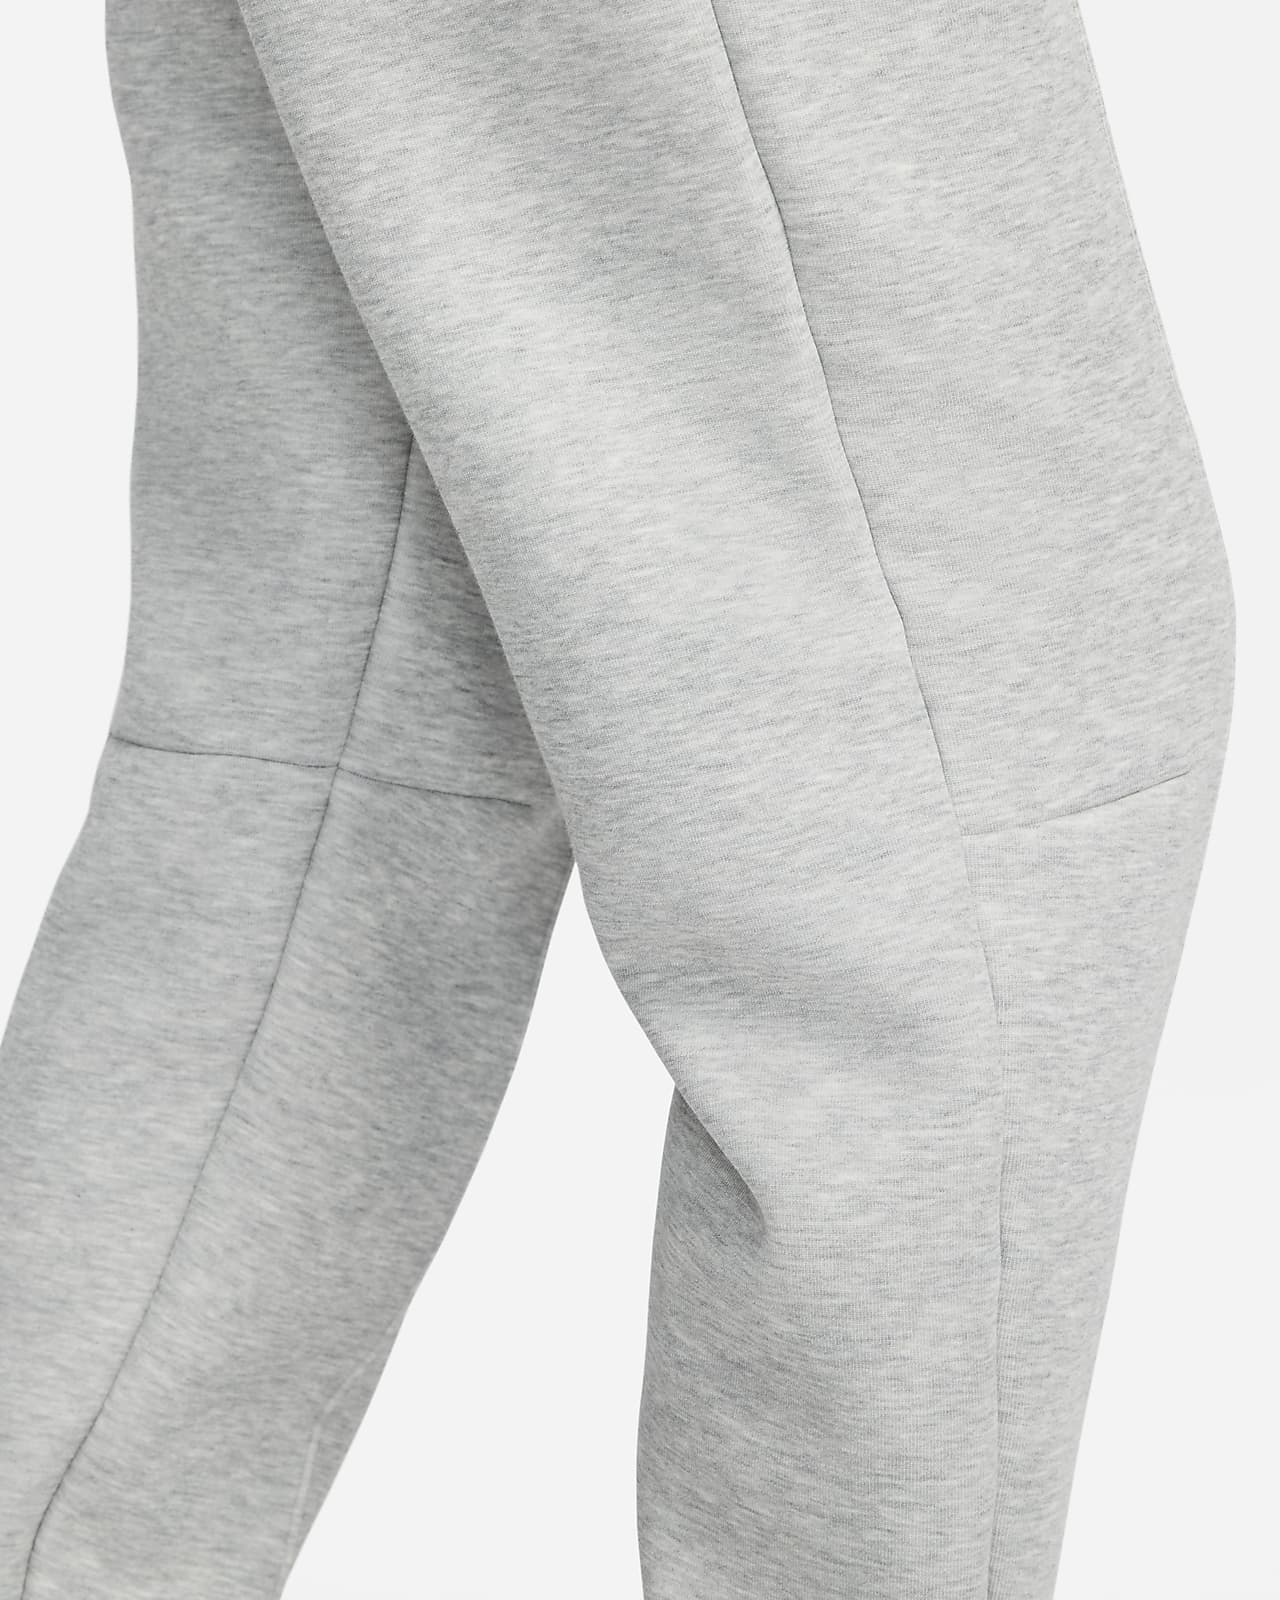 Women's Pants Jogger Nike Tech Fleece Size M